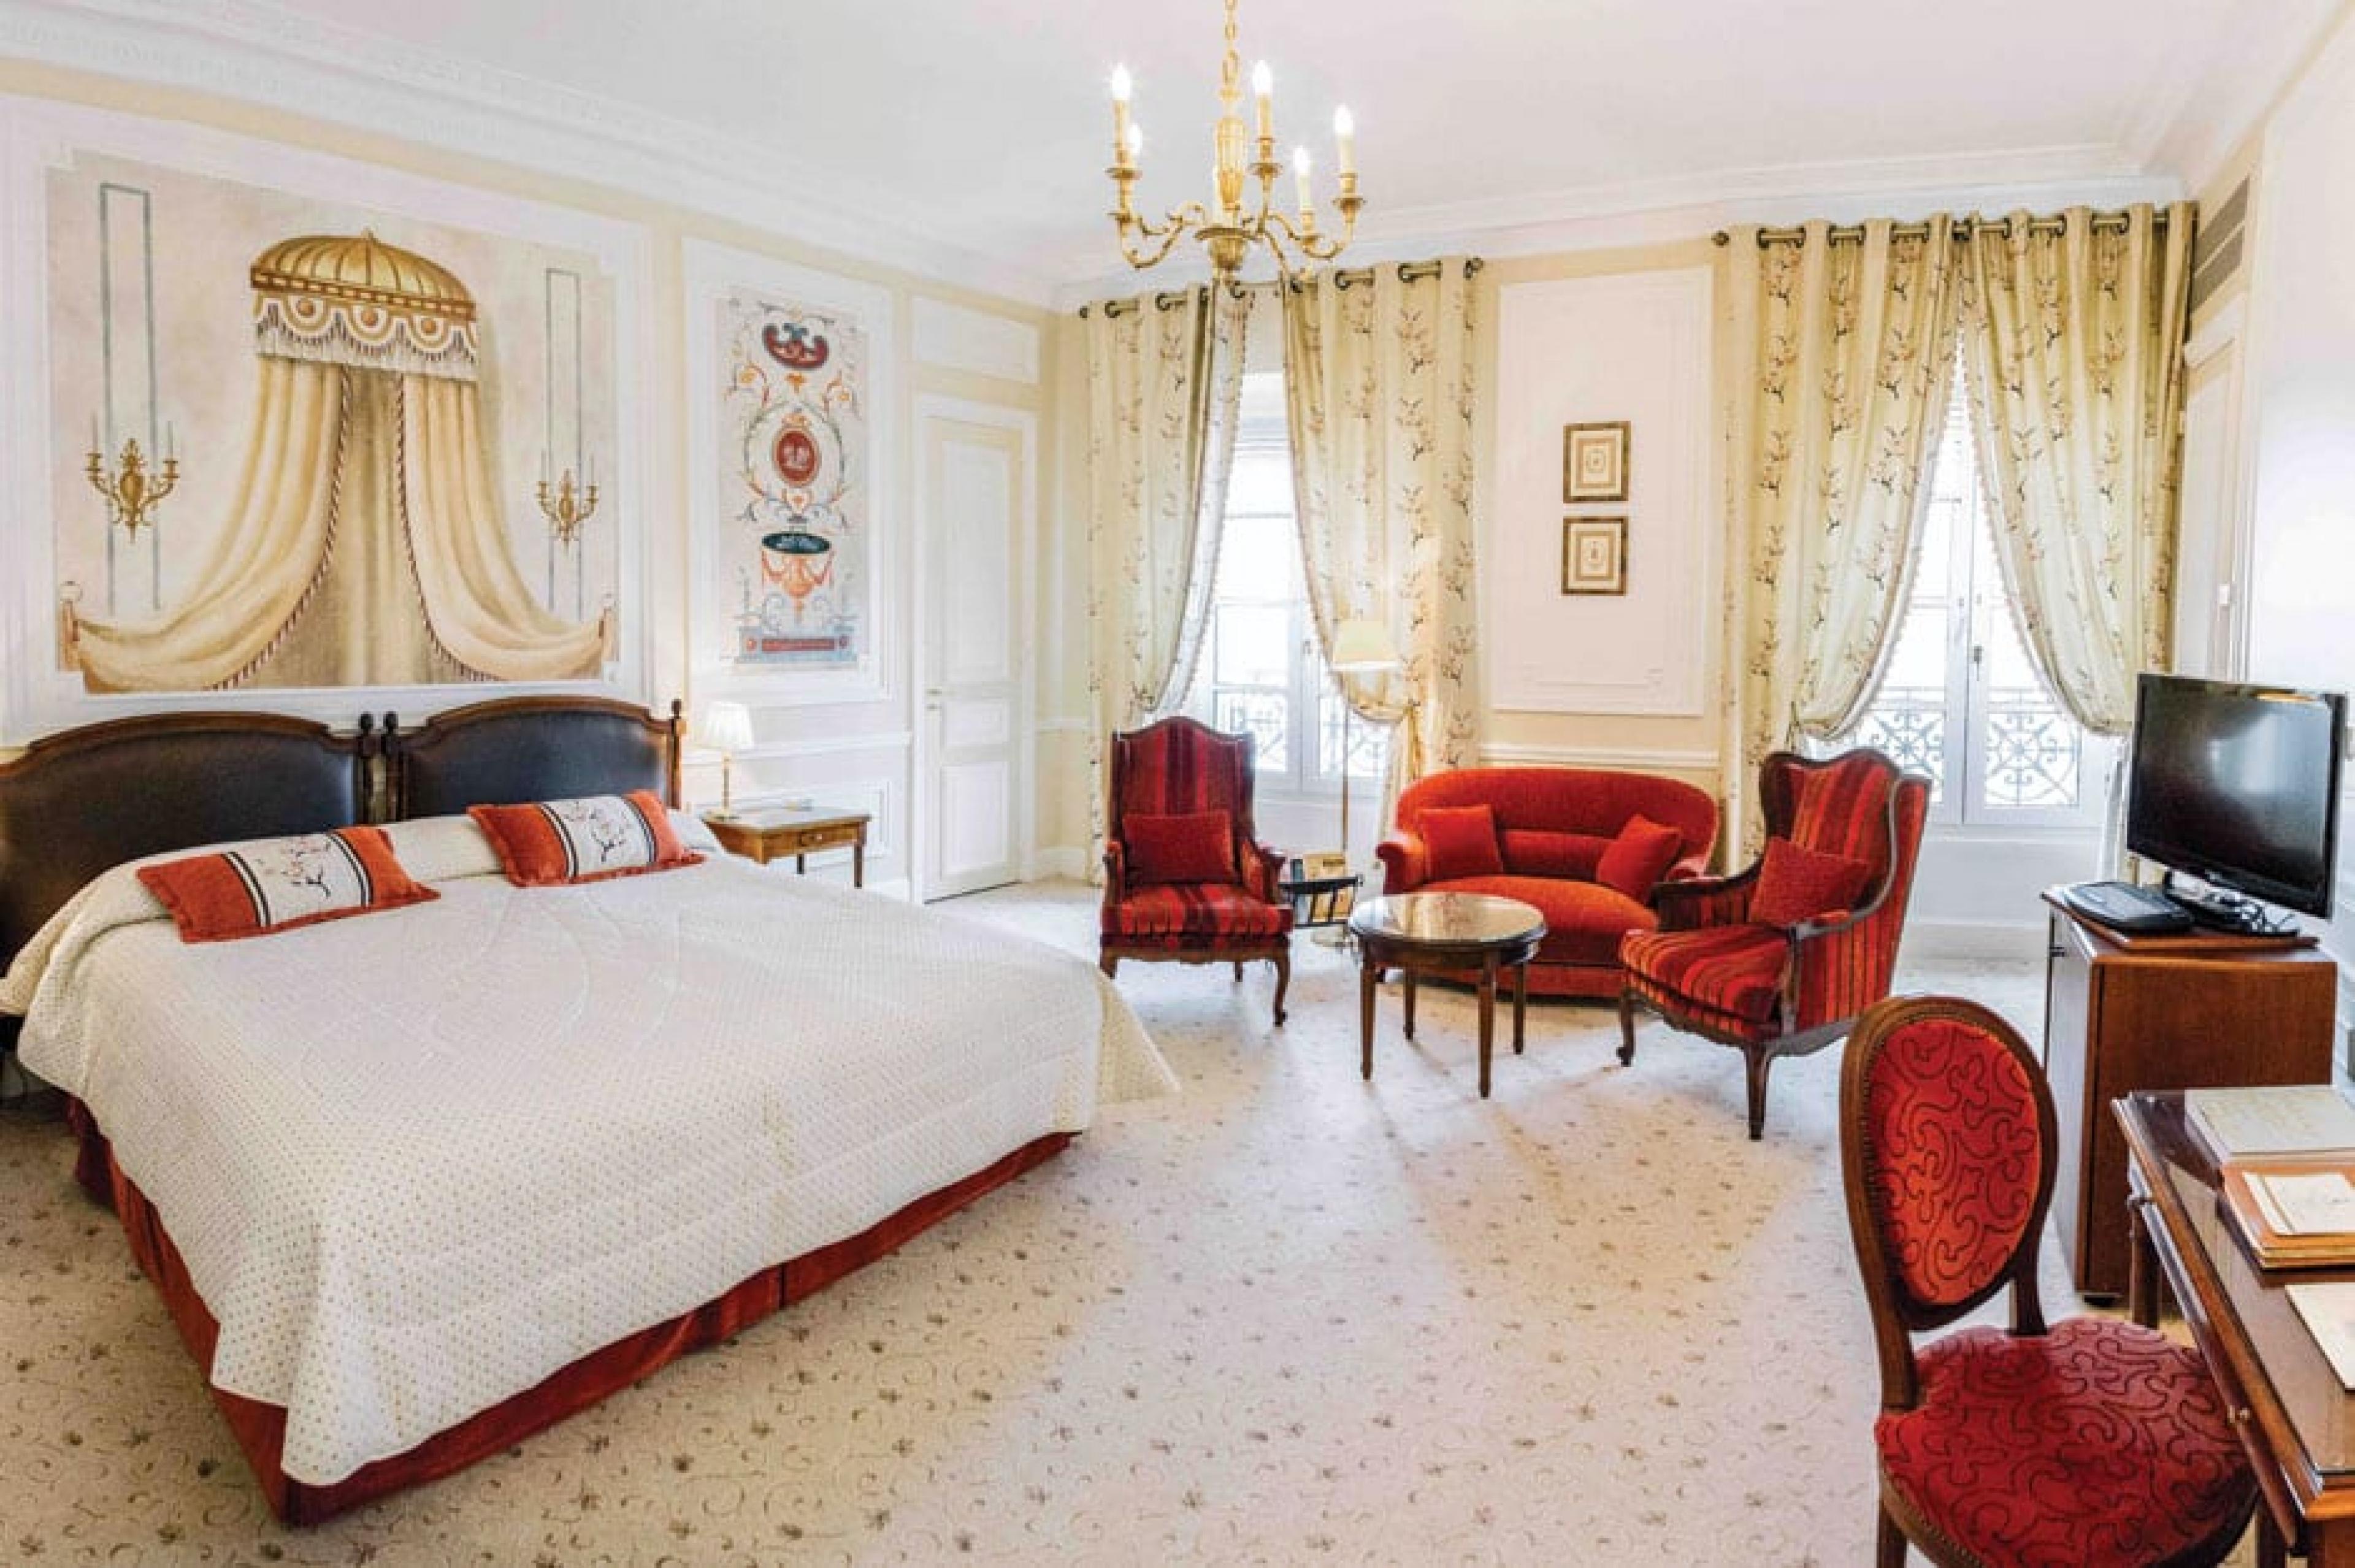 Suite at Hotel du Palais Biarritz, Biarritz & Pays Basque, France